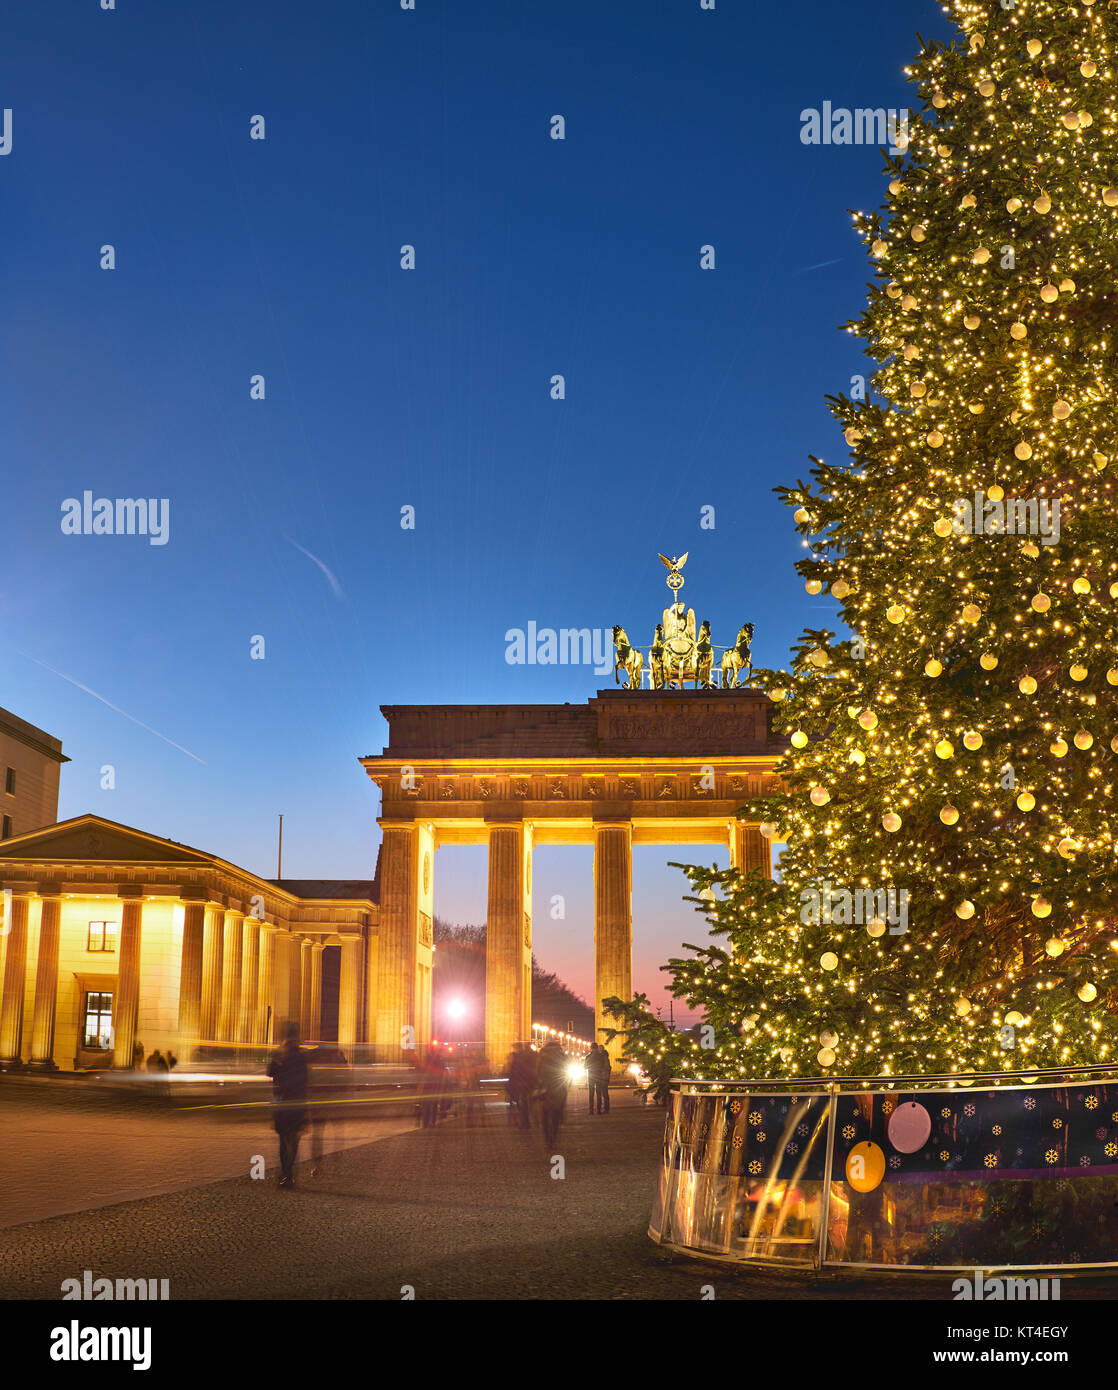 Brandenburger Tor in Berlin mit Weihnachtsbaum in der Nacht mit abendlichen  Beleuchtung, Panoramic Image Stockfotografie - Alamy